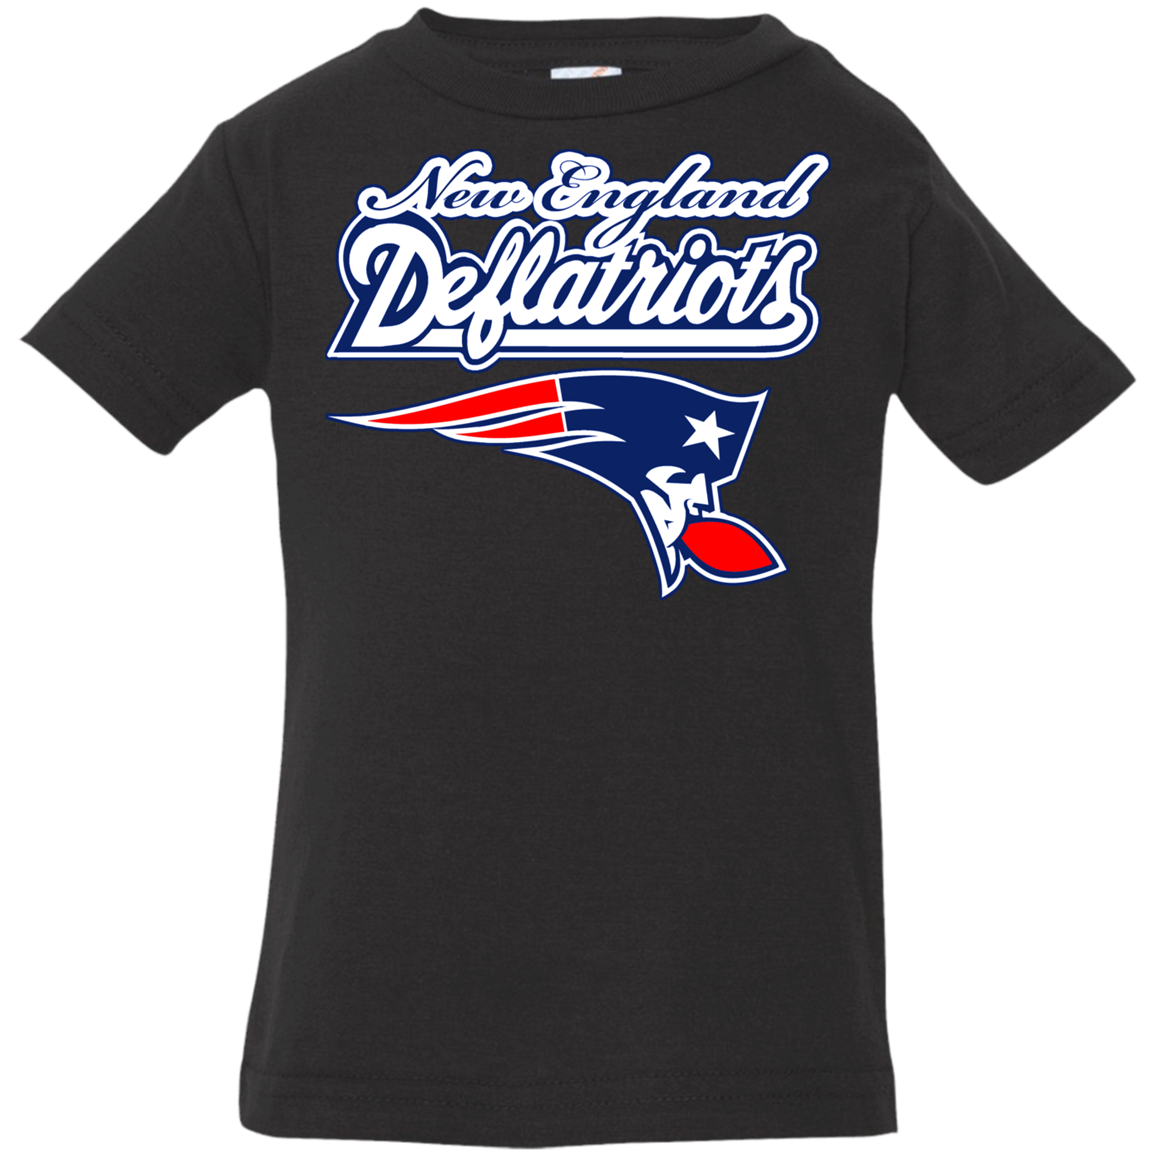 ArtichokeUSA Custom Design. New England Deflatriots. New England Patriots Parody. Infant Jersey T-Shirt